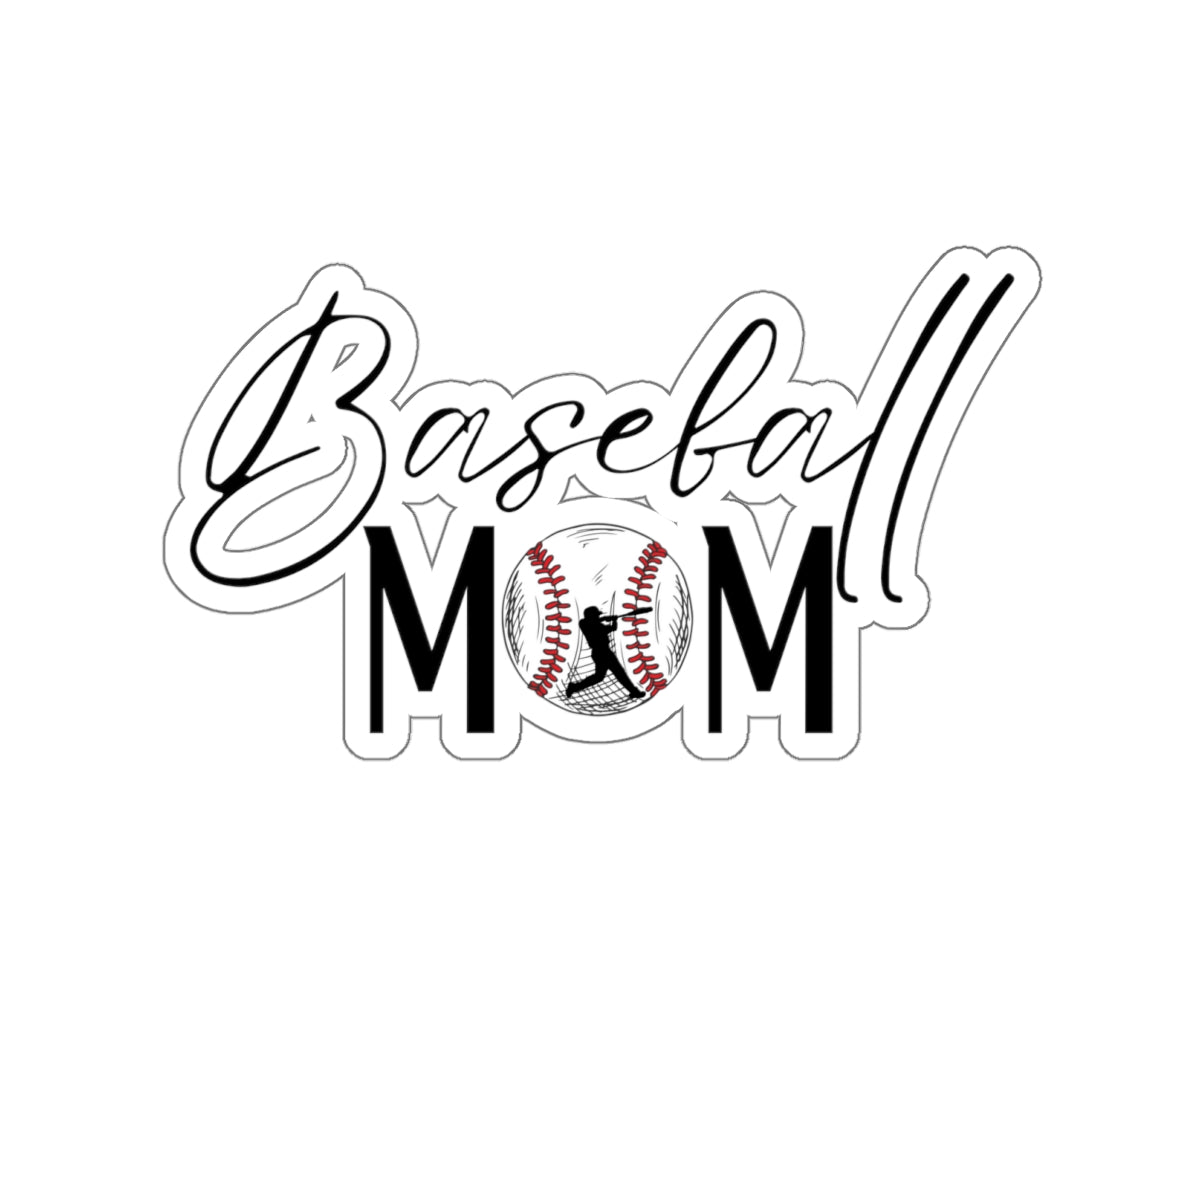 Baseball Mom Kiss-Cut Stickers